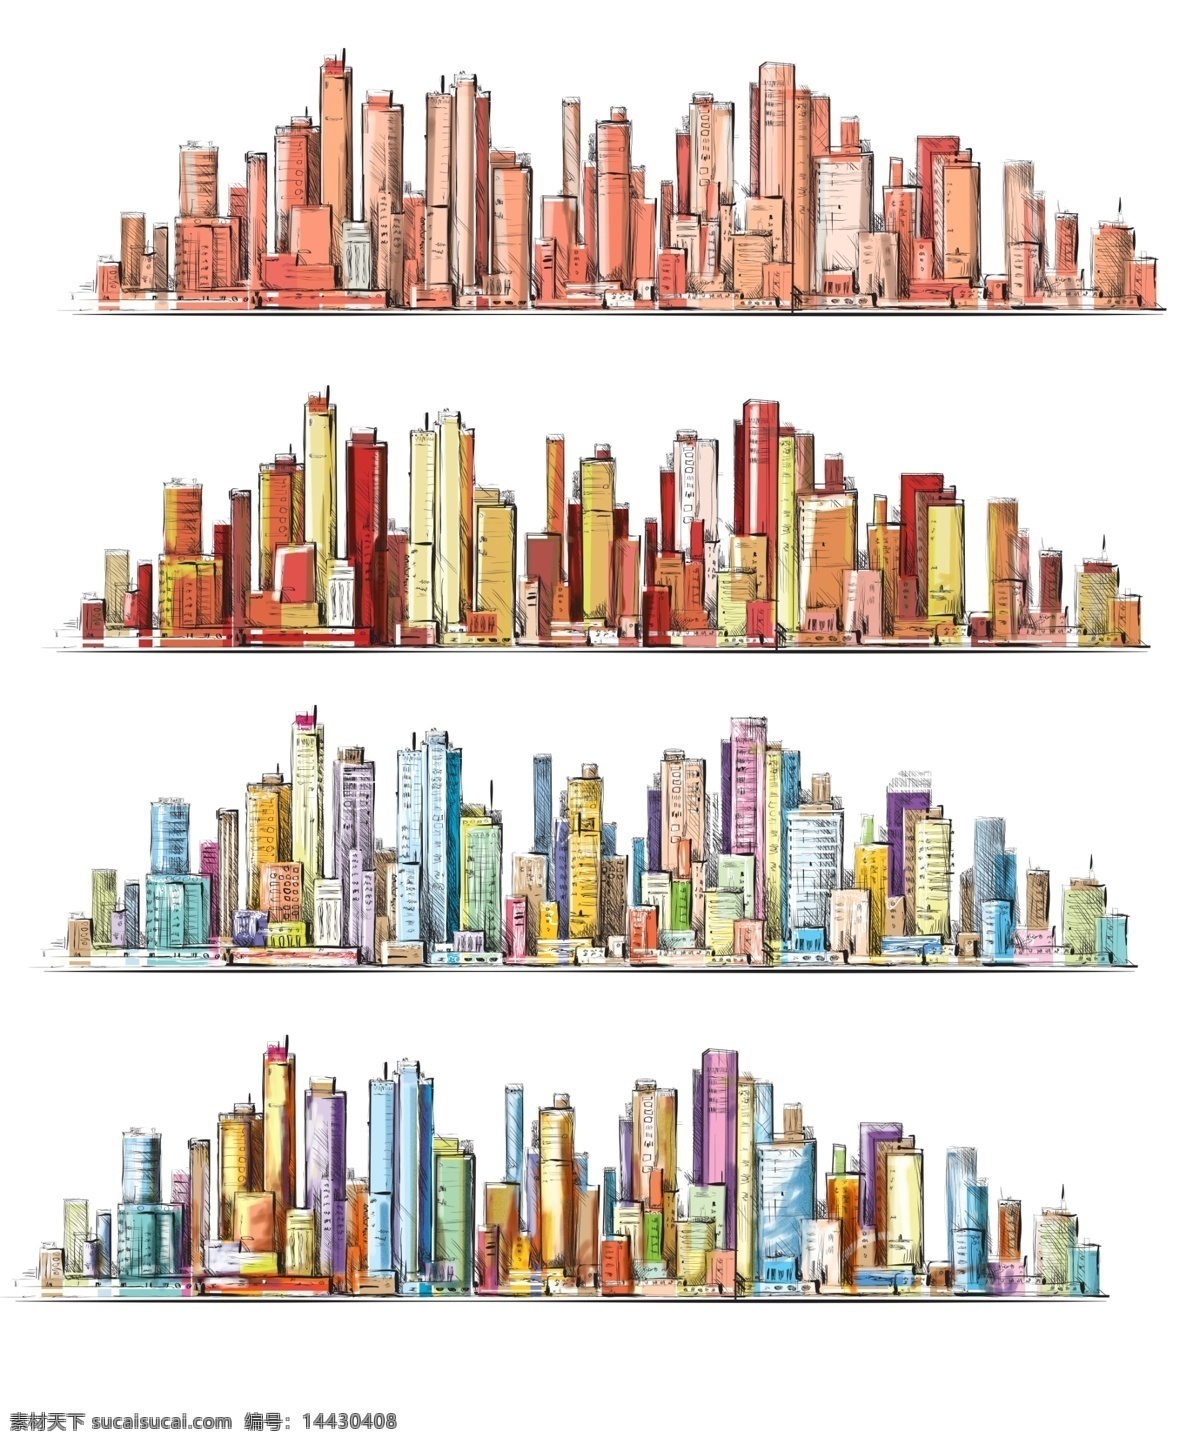 手绘 城市 水彩画 手绘城市 手绘线描 城市线描 彩绘 城市建筑 城市建筑线描 环境设计 建筑设计